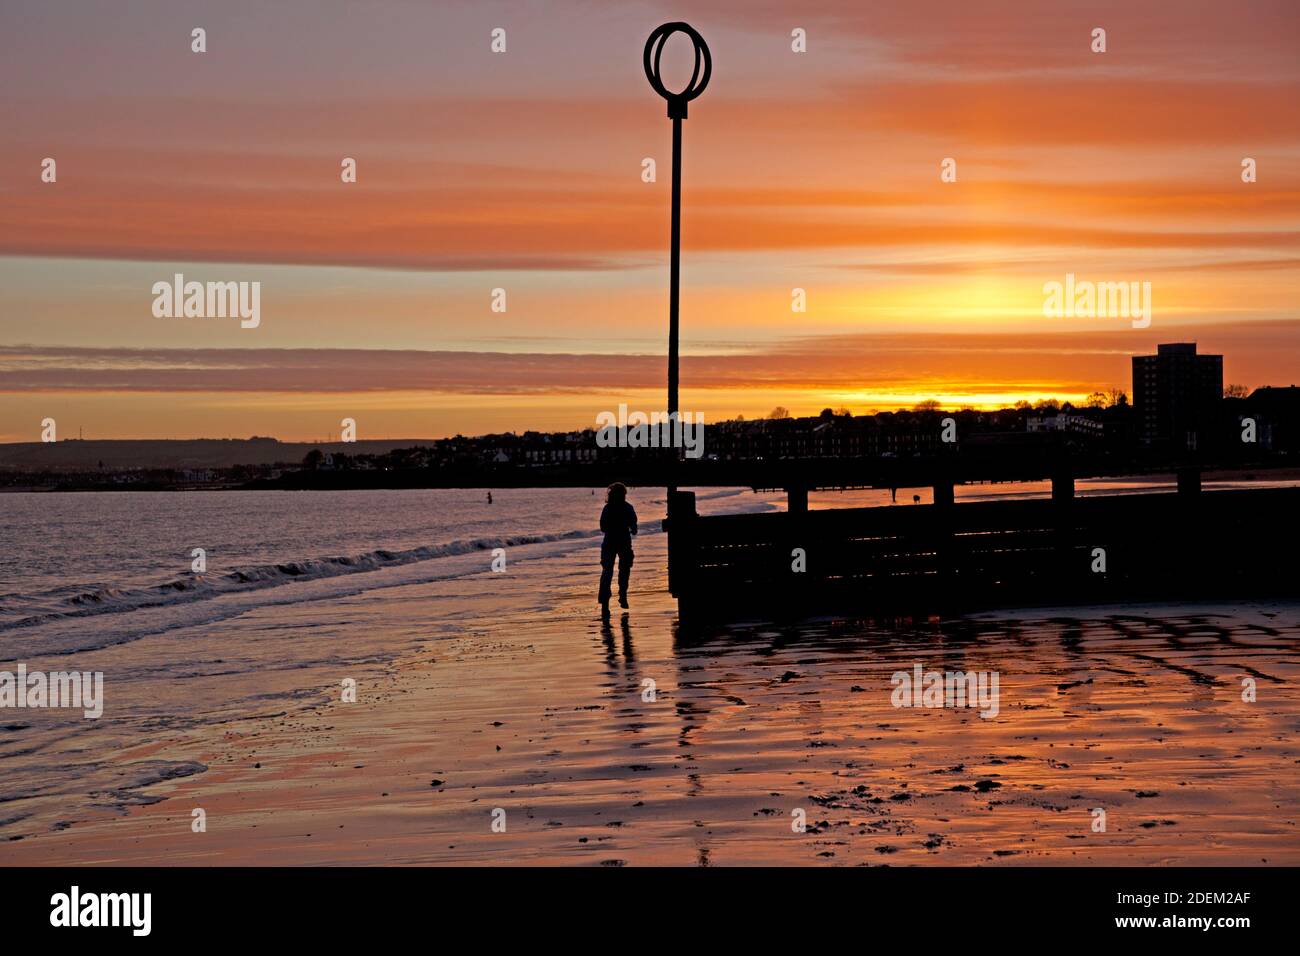 Portobello, Edimburgo, Scozia, Regno Unito, 1 dicembre 2020. Lo scorso mese dell'anno è stato accolto con una splendida alba sul mare. Temperatura 4 gradi, nella foto: Un pareggiatore fa la sua strada intorno alle gringe spiaggia. Arch White/Alamy Live News. Foto Stock